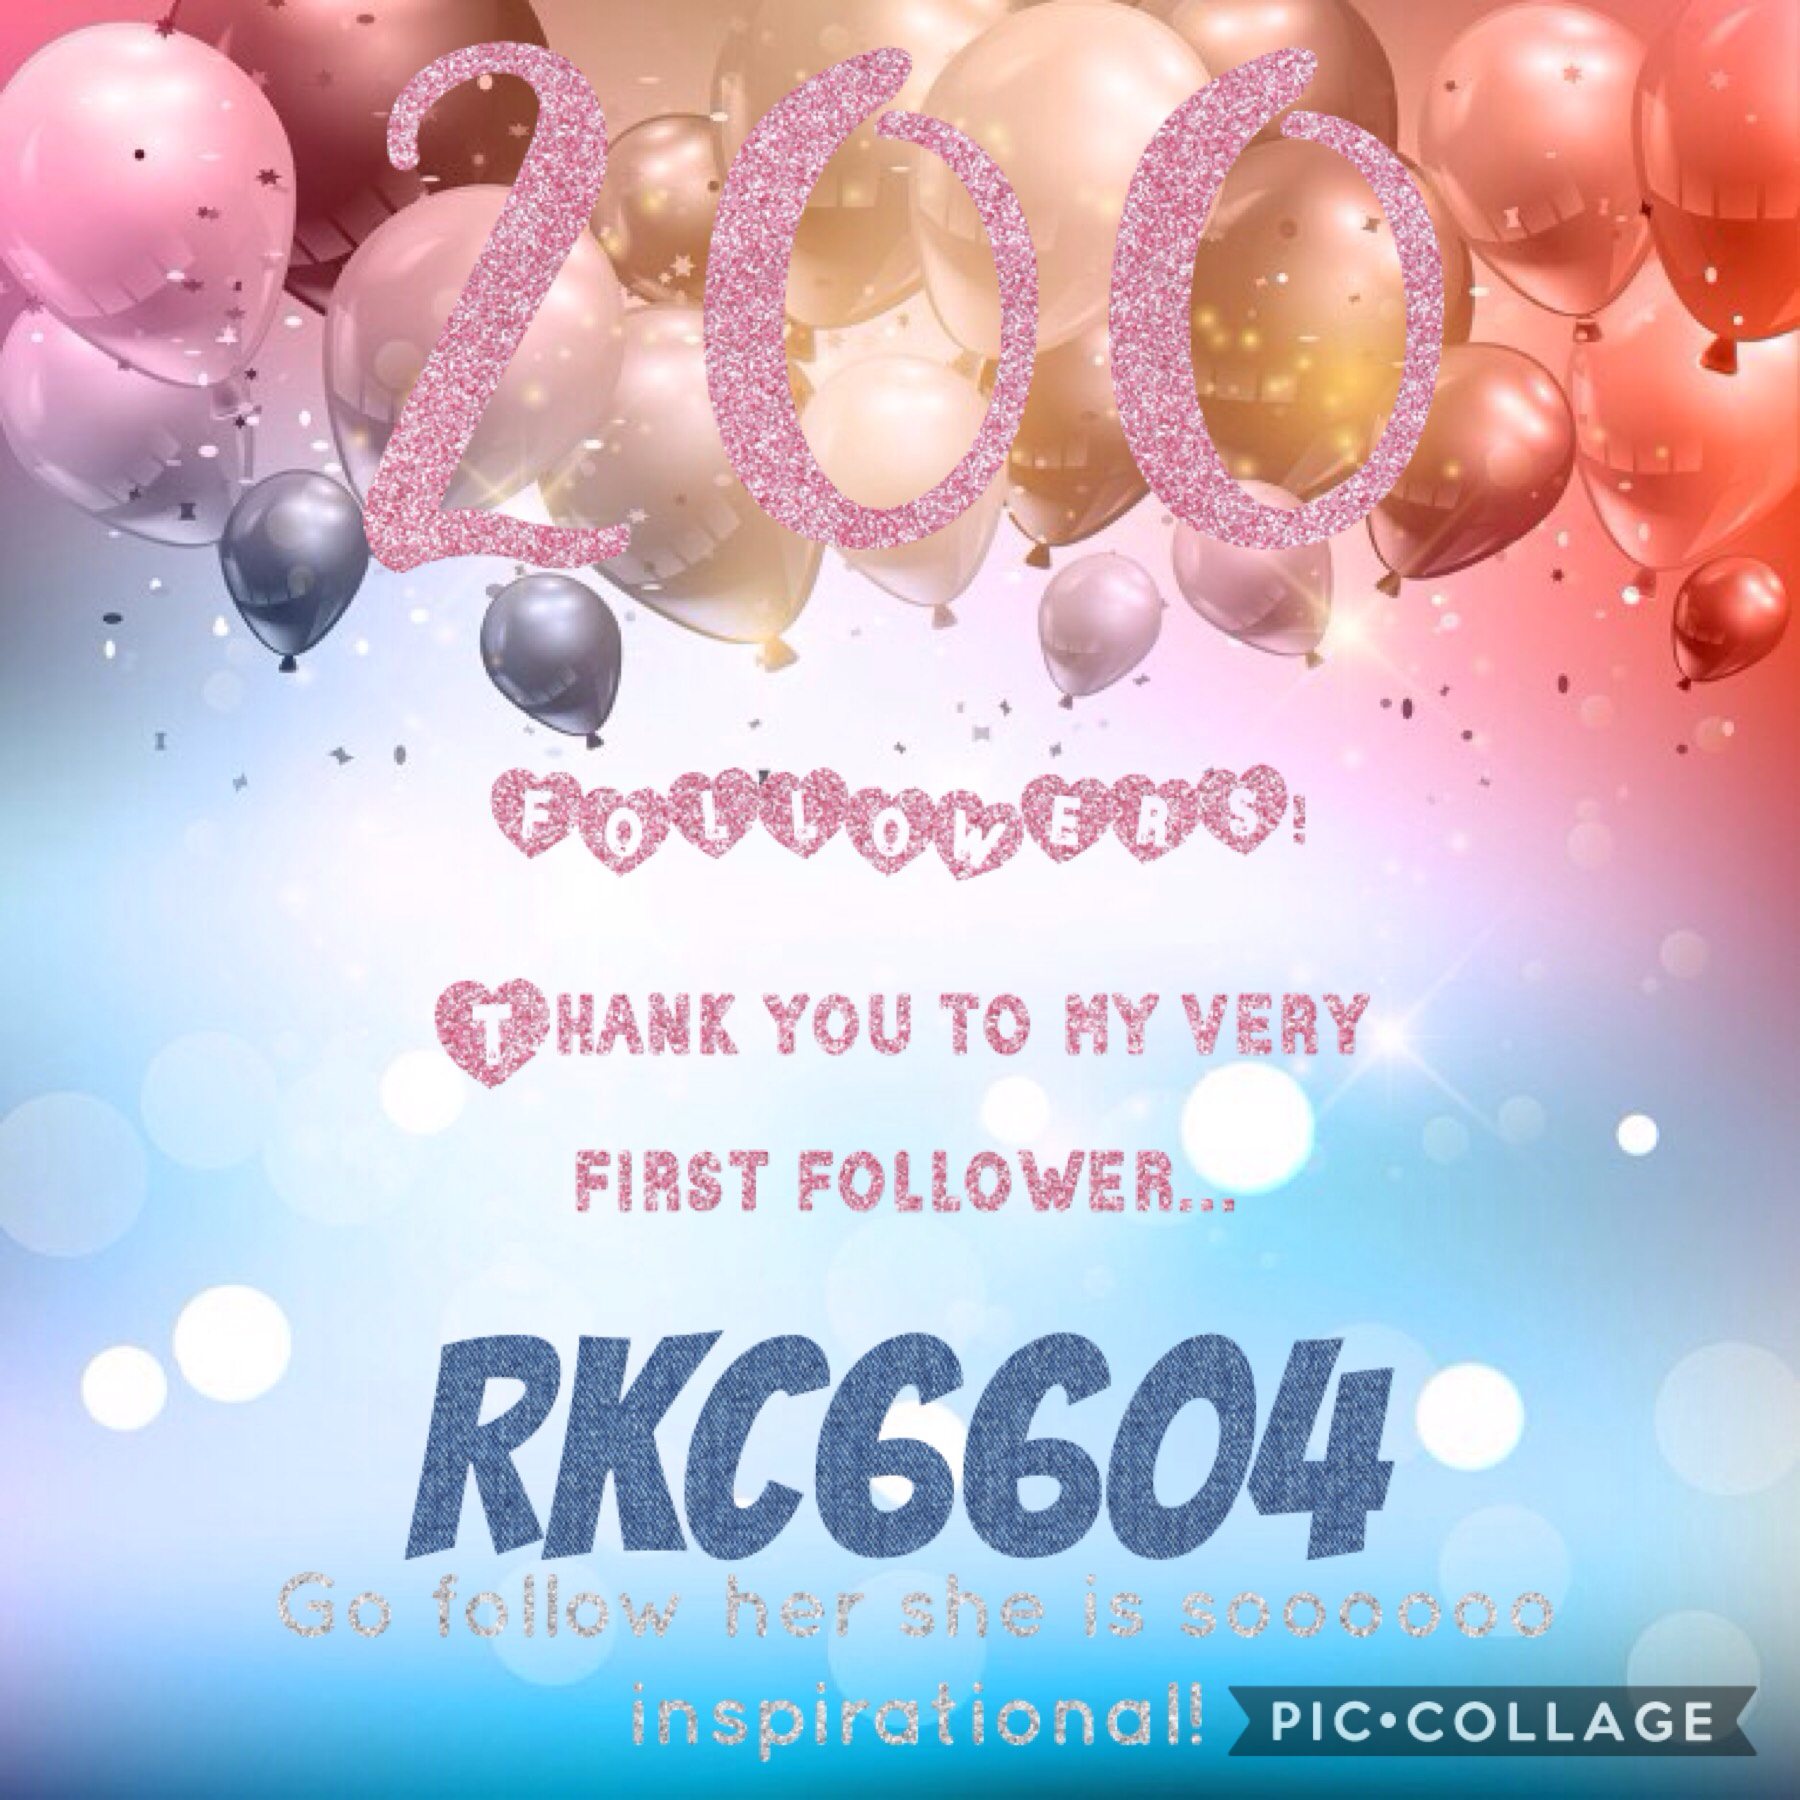 Go follow RKC6604